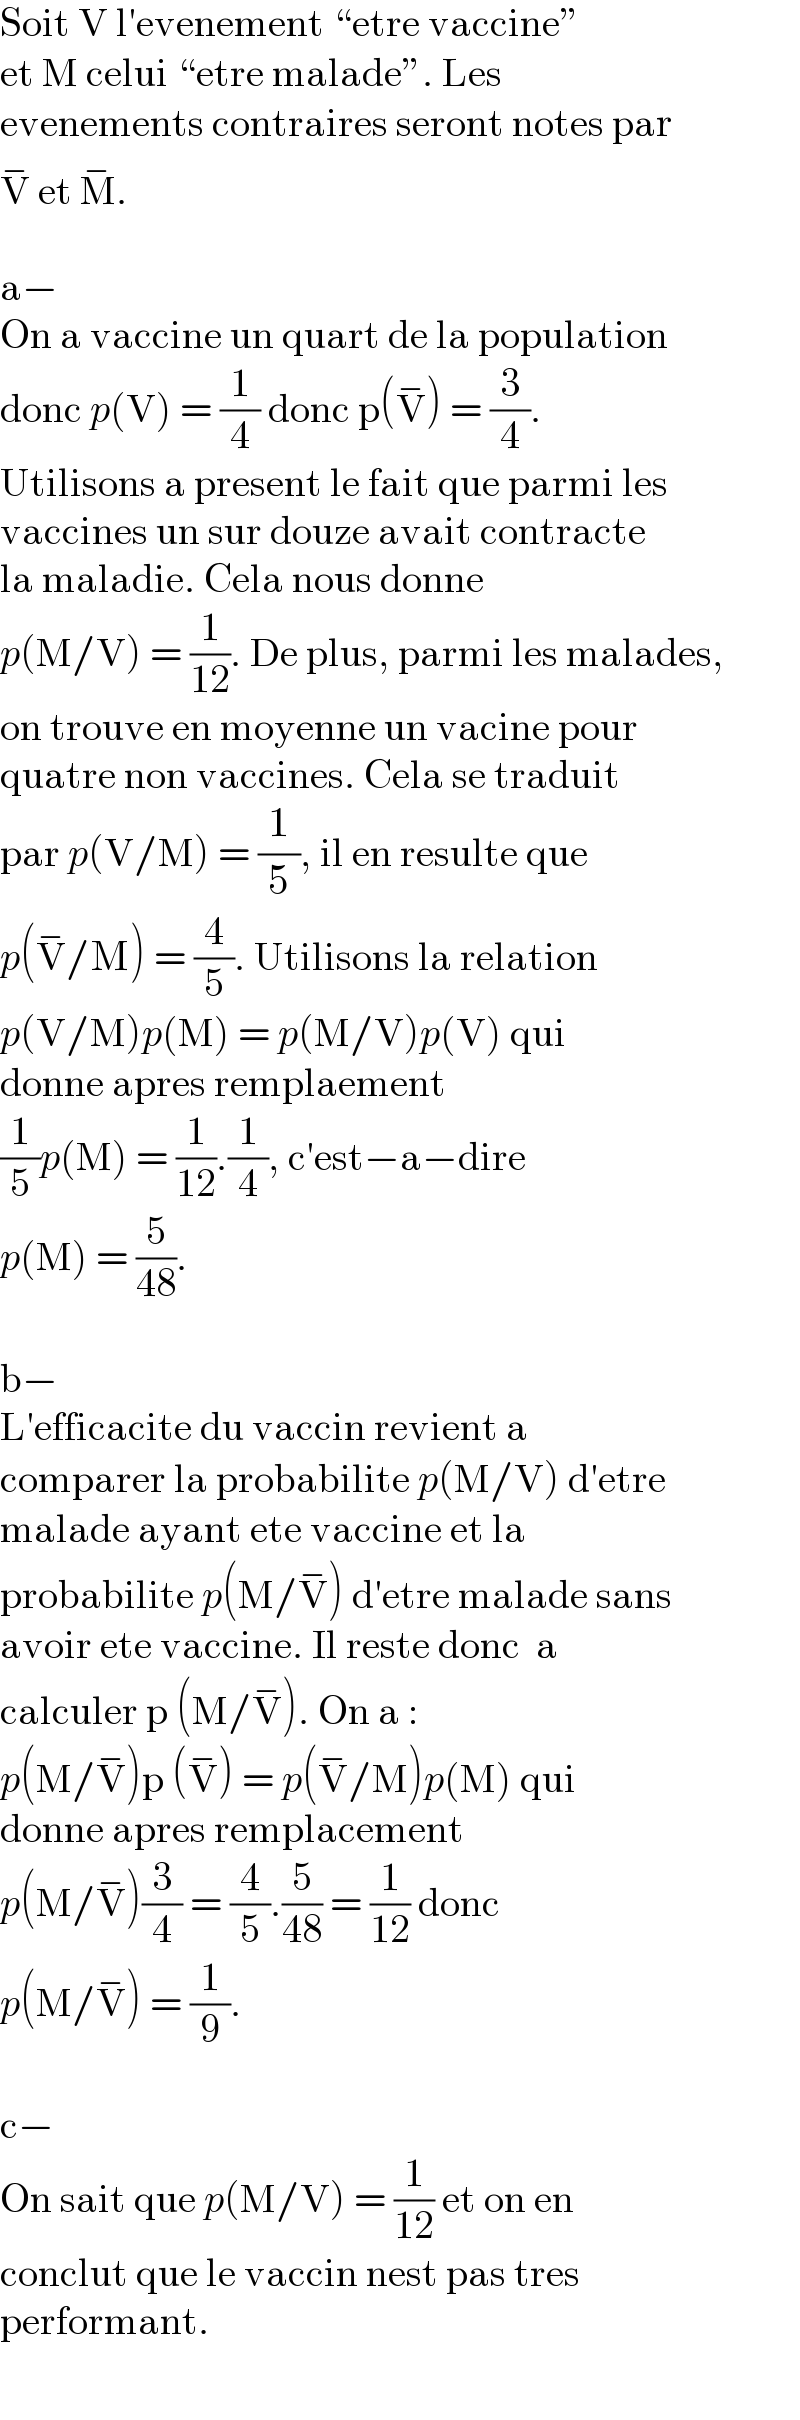 Soit V l′evenement “etre vaccine”  et M celui “etre malade”. Les  evenements contraires seront notes par  V^−  et M^− .    a−  On a vaccine un quart de la population  donc p(V) = (1/4) donc p(V^− ) = (3/4).  Utilisons a present le fait que parmi les  vaccines un sur douze avait contracte  la maladie. Cela nous donne  p(M/V) = (1/(12)). De plus, parmi les malades,  on trouve en moyenne un vacine pour  quatre non vaccines. Cela se traduit  par p(V/M) = (1/5), il en resulte que  p(V^− /M) = (4/5). Utilisons la relation  p(V/M)p(M) = p(M/V)p(V) qui  donne apres remplaement  (1/5)p(M) = (1/(12)).(1/4), c′est−a−dire  p(M) = (5/(48)).    b−  L′efficacite du vaccin revient a  comparer la probabilite p(M/V) d′etre  malade ayant ete vaccine et la  probabilite p(M/V^− ) d′etre malade sans  avoir ete vaccine. Il reste donc  a  calculer p (M/V^− ). On a :  p(M/V^− )p (V^− ) = p(V^− /M)p(M) qui  donne apres remplacement  p(M/V^− )(3/4) = (4/5).(5/(48)) = (1/(12)) donc  p(M/V^− ) = (1/9).    c−  On sait que p(M/V) = (1/(12)) et on en  conclut que le vaccin nest pas tres  performant.  